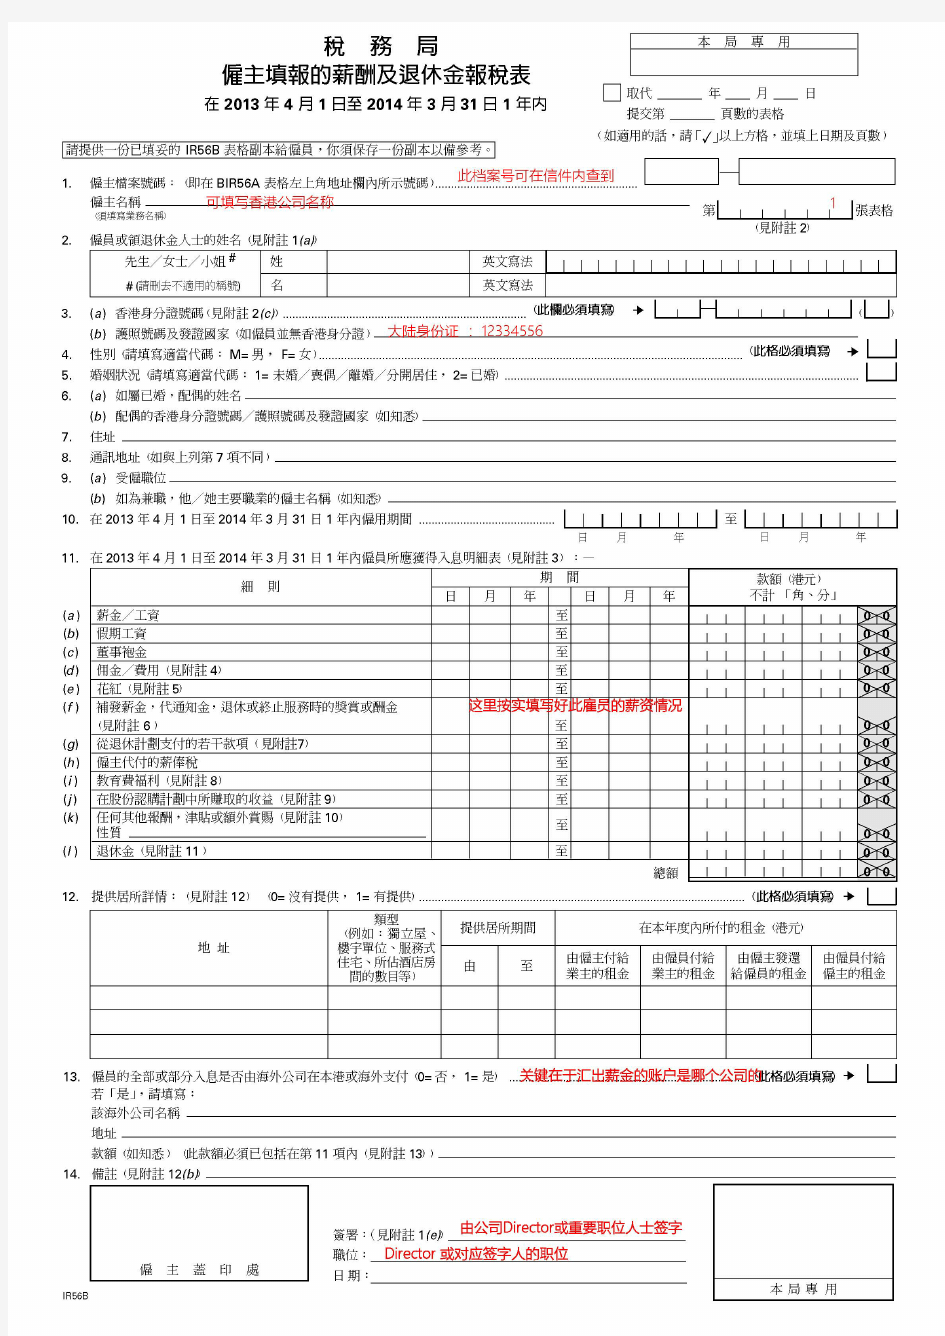 香港公司薪俸税报税表填写示例 - 香港雇主填报的薪酬及退休金报税表(IRB56A和IRB56B)亦用于没请人零申报